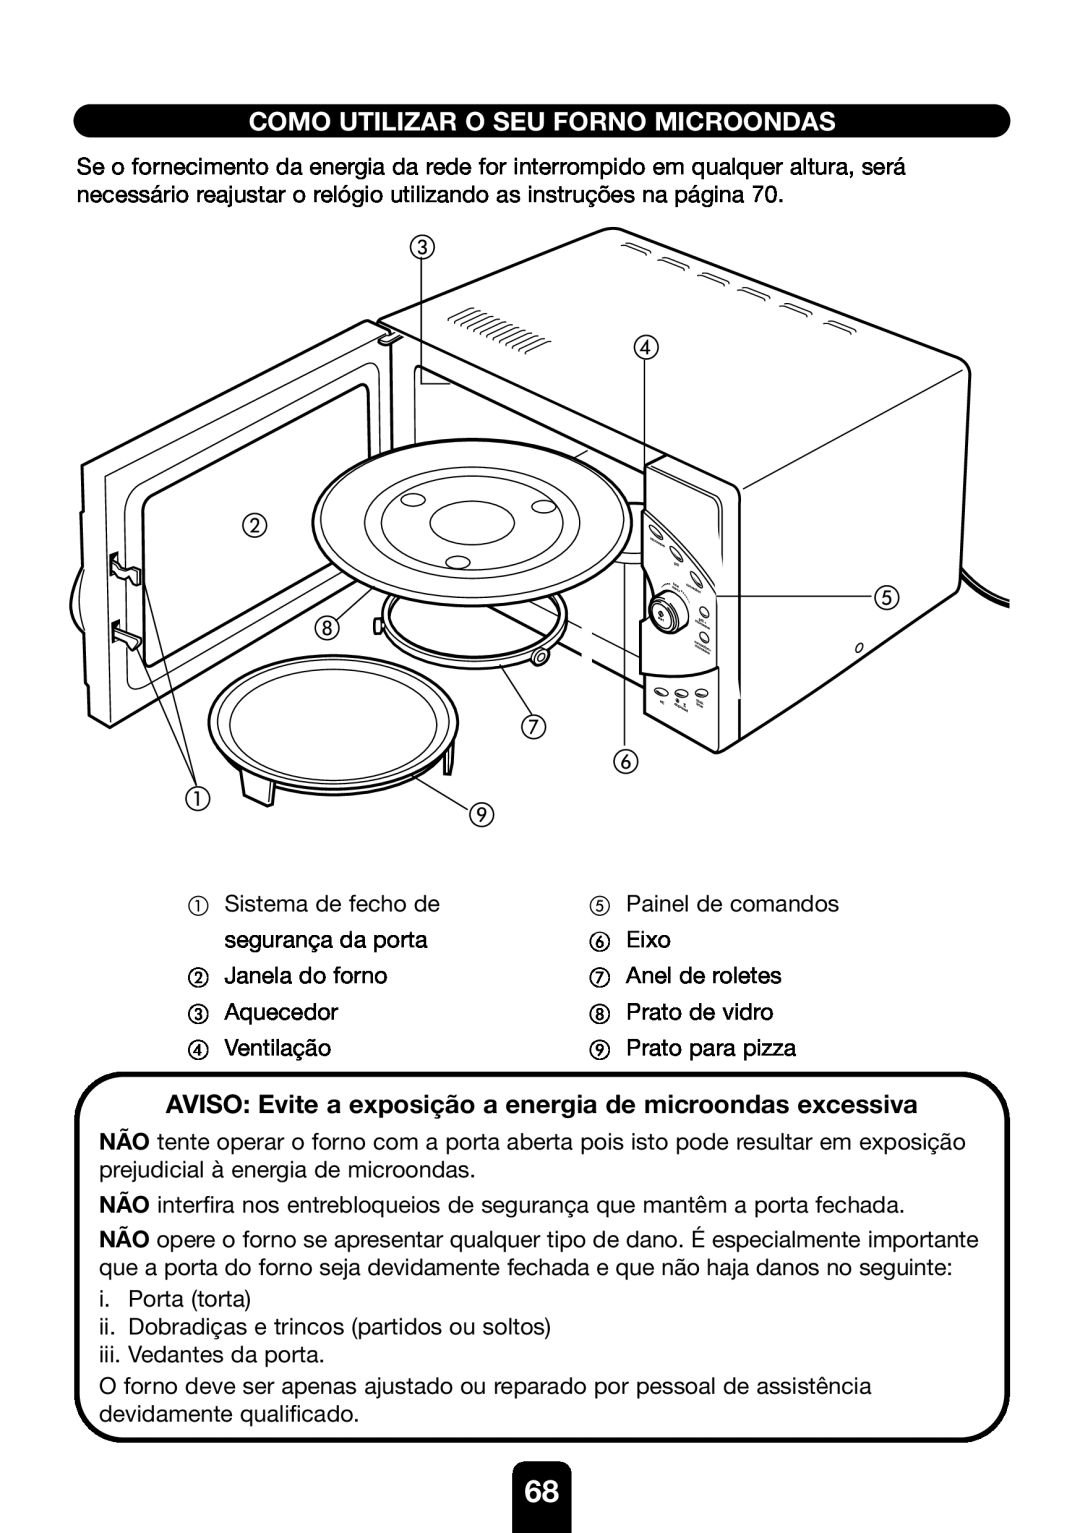 Kenwood MW761E manual Como Utilizar O Seu Forno Microondas, AVISO Evite a exposição a energia de microondas excessiva 